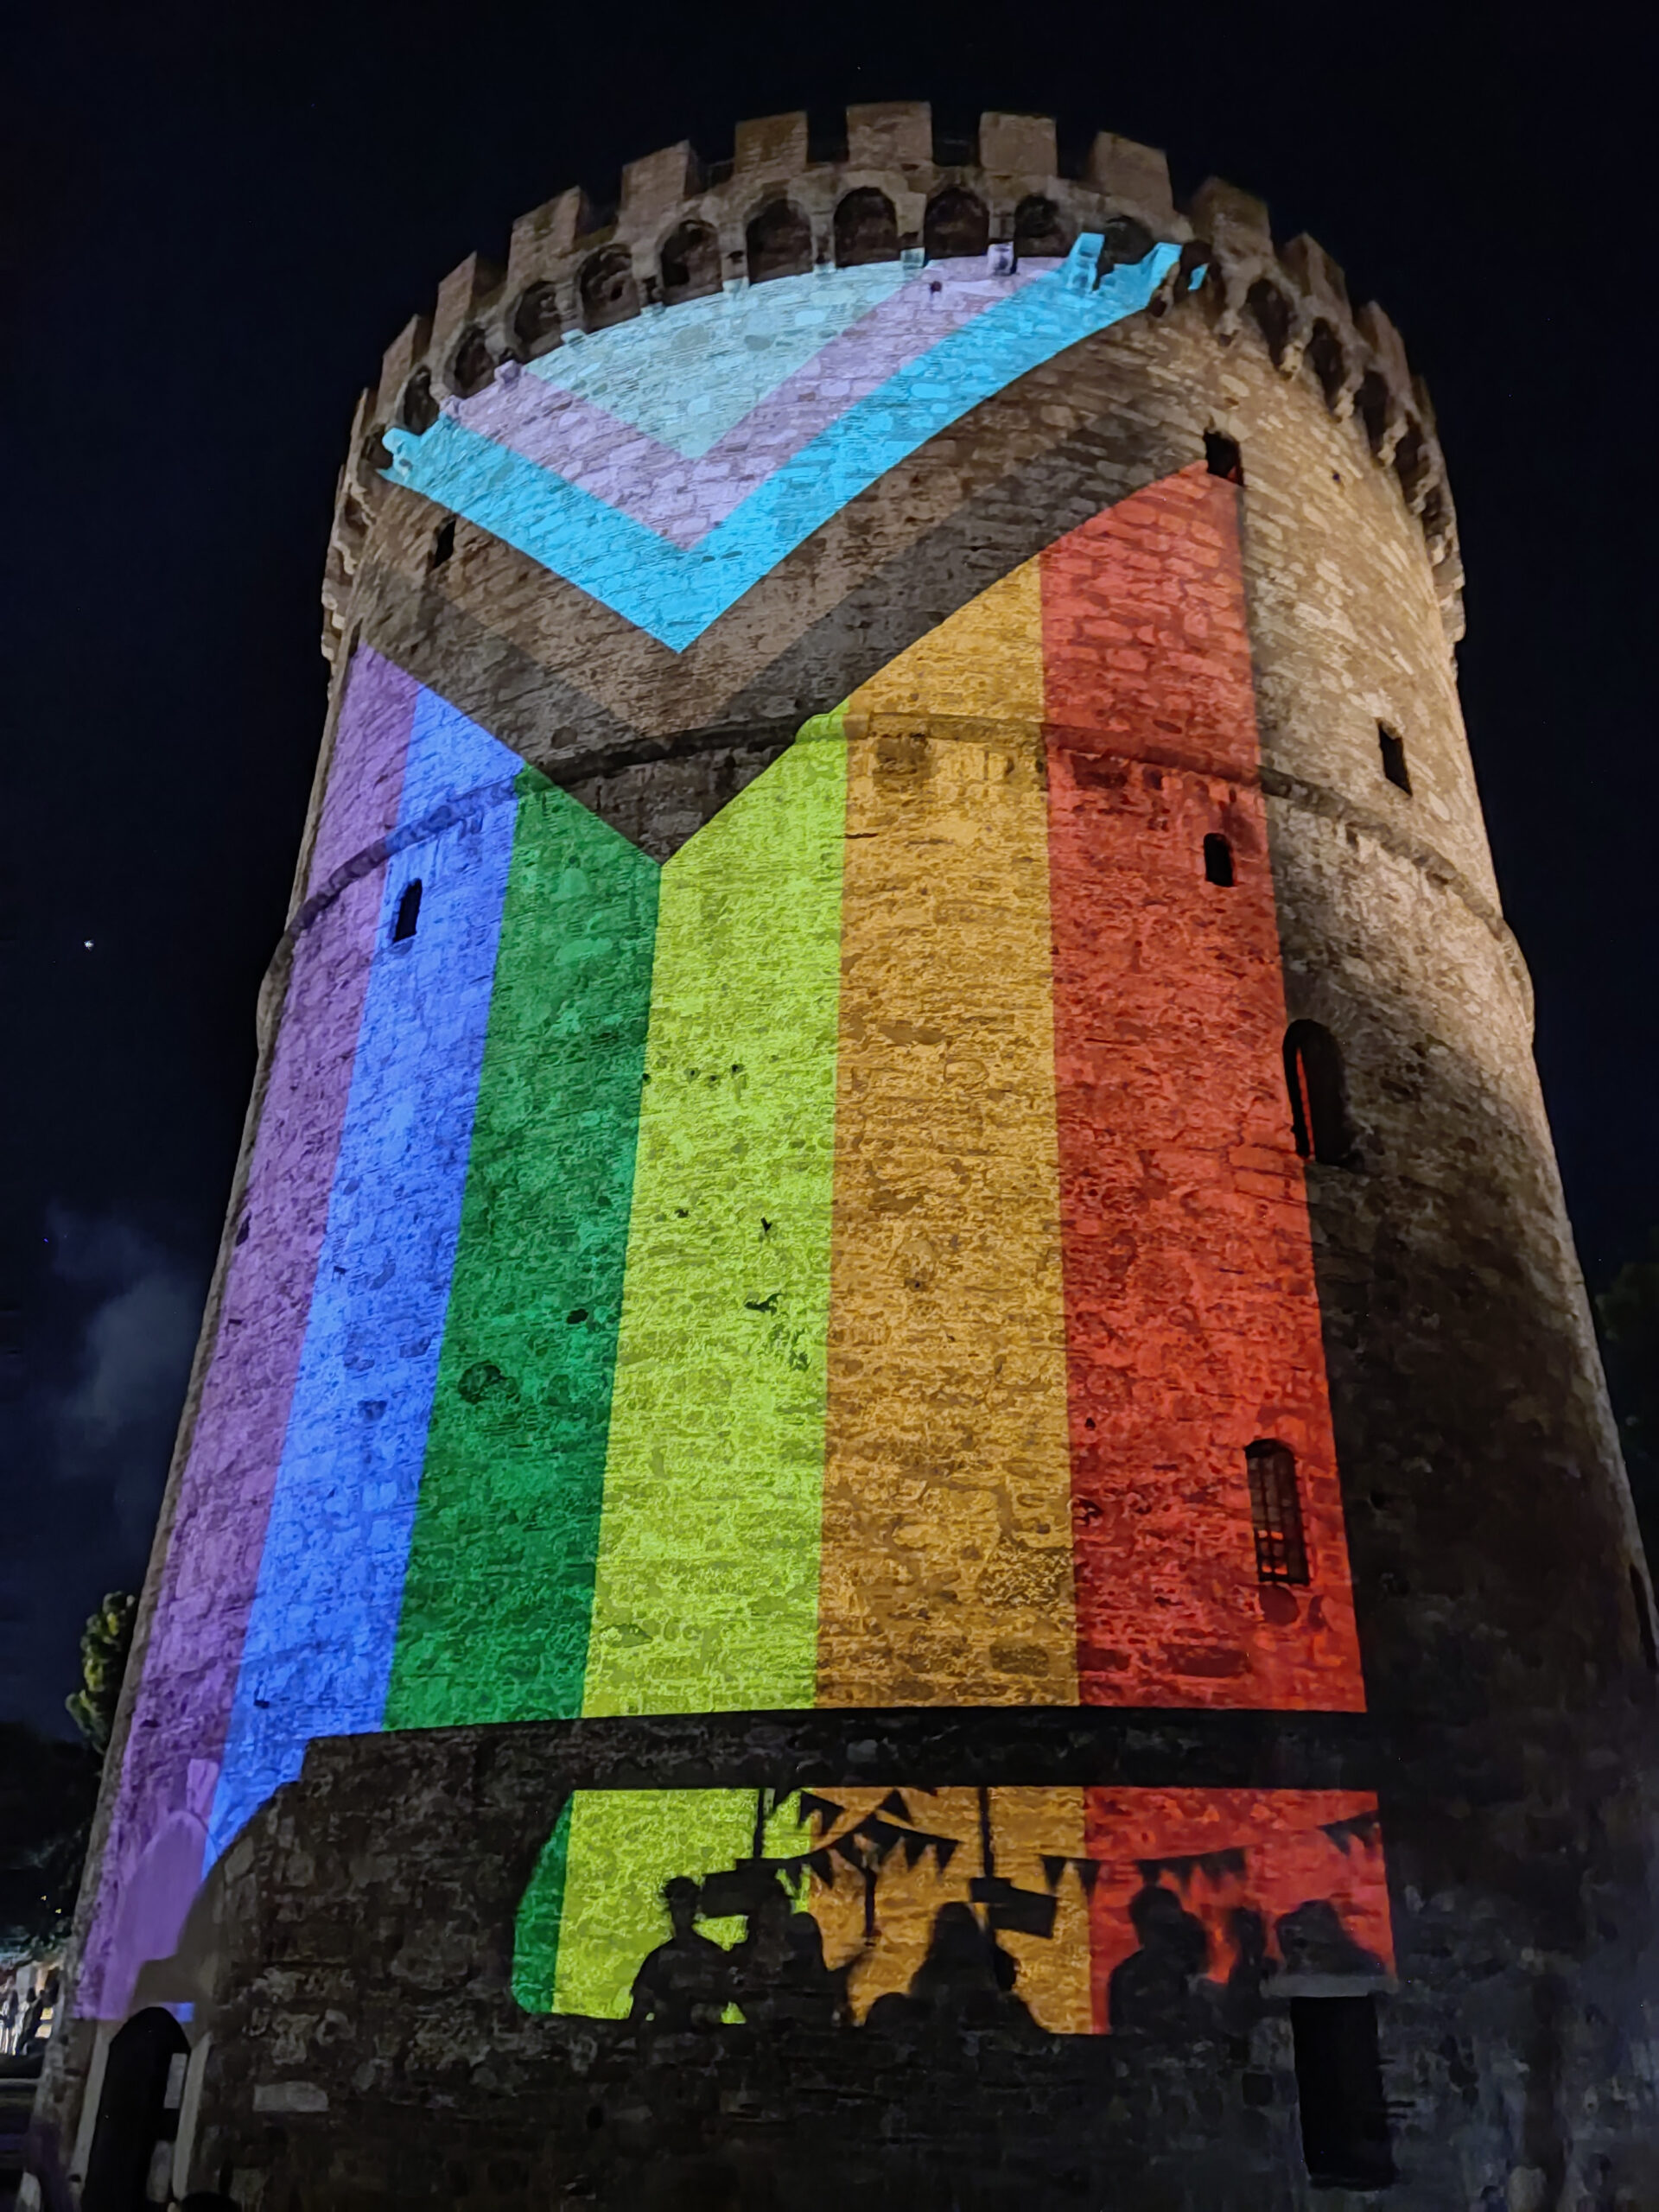 . Το 6ήμερο των εκδηλώσεων Thessaloniki Pride ολοκληρώθηκε με τη μεγαλειώδη πορεία υπερηφάνειας